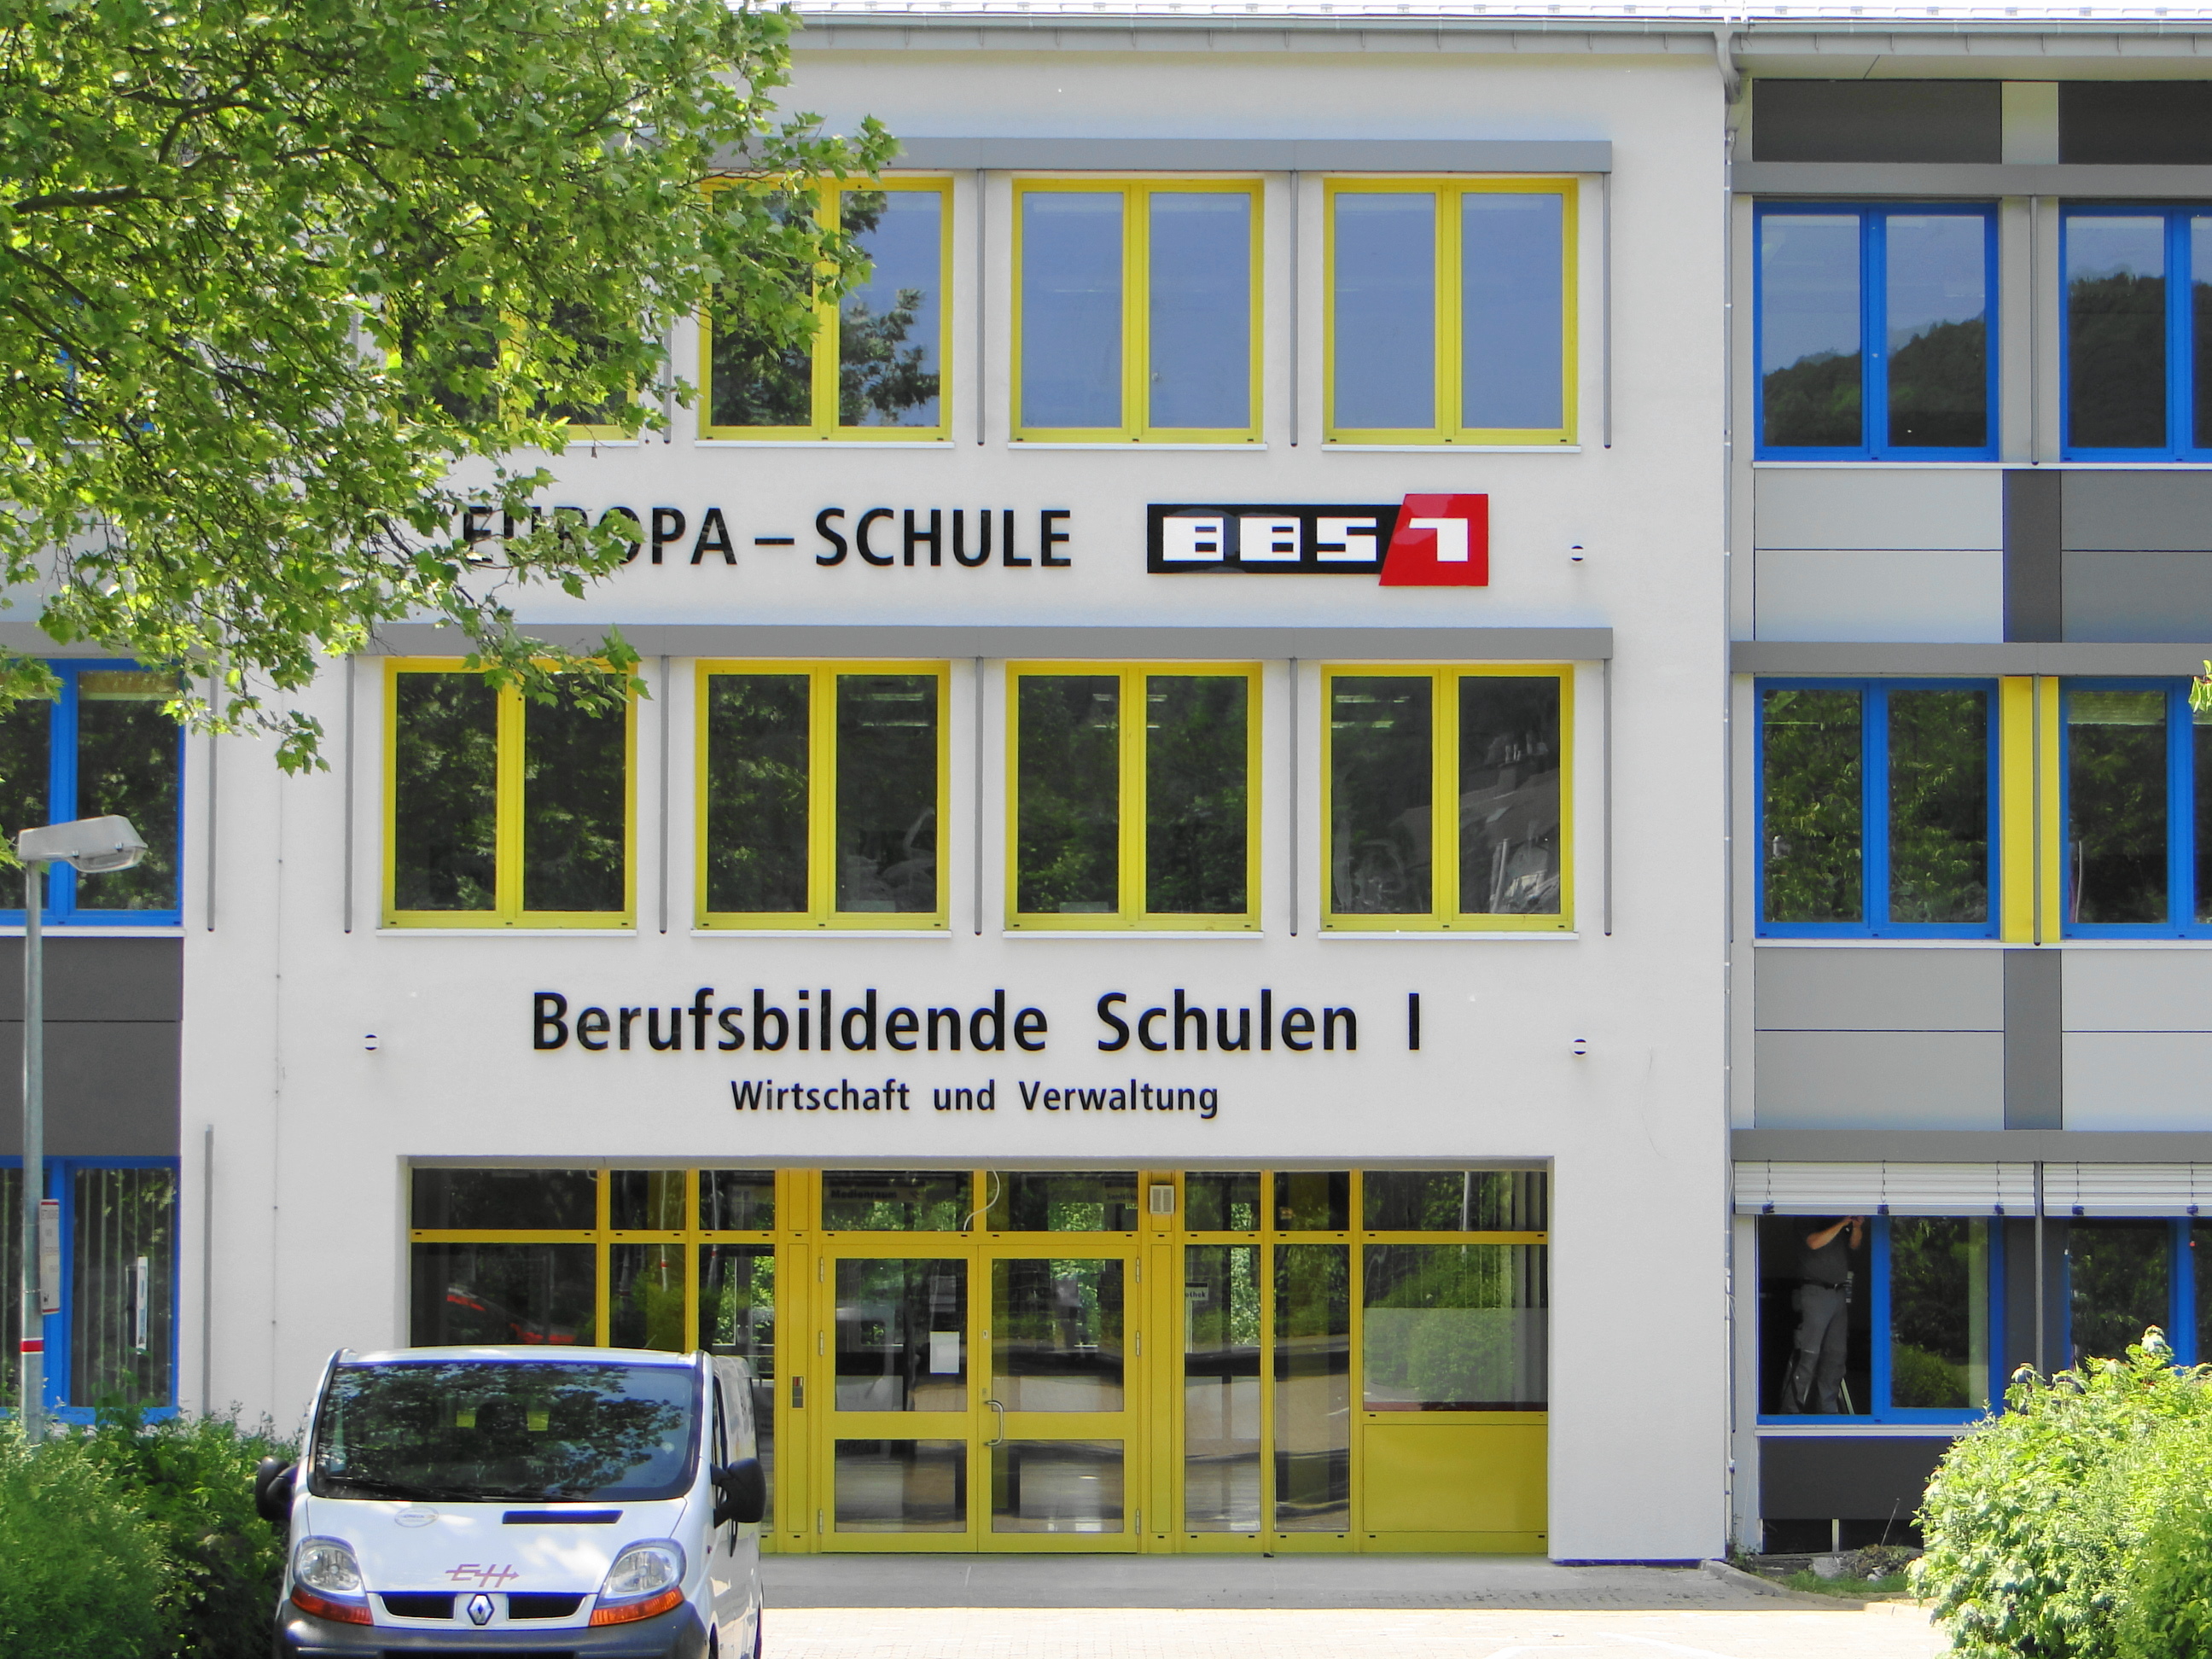 Europa-Schule BBS I Berufsbildende Schulen 1 Northeim  für Wirtschaft und Verwaltung in der Sudheimer Str. 36, Eingang